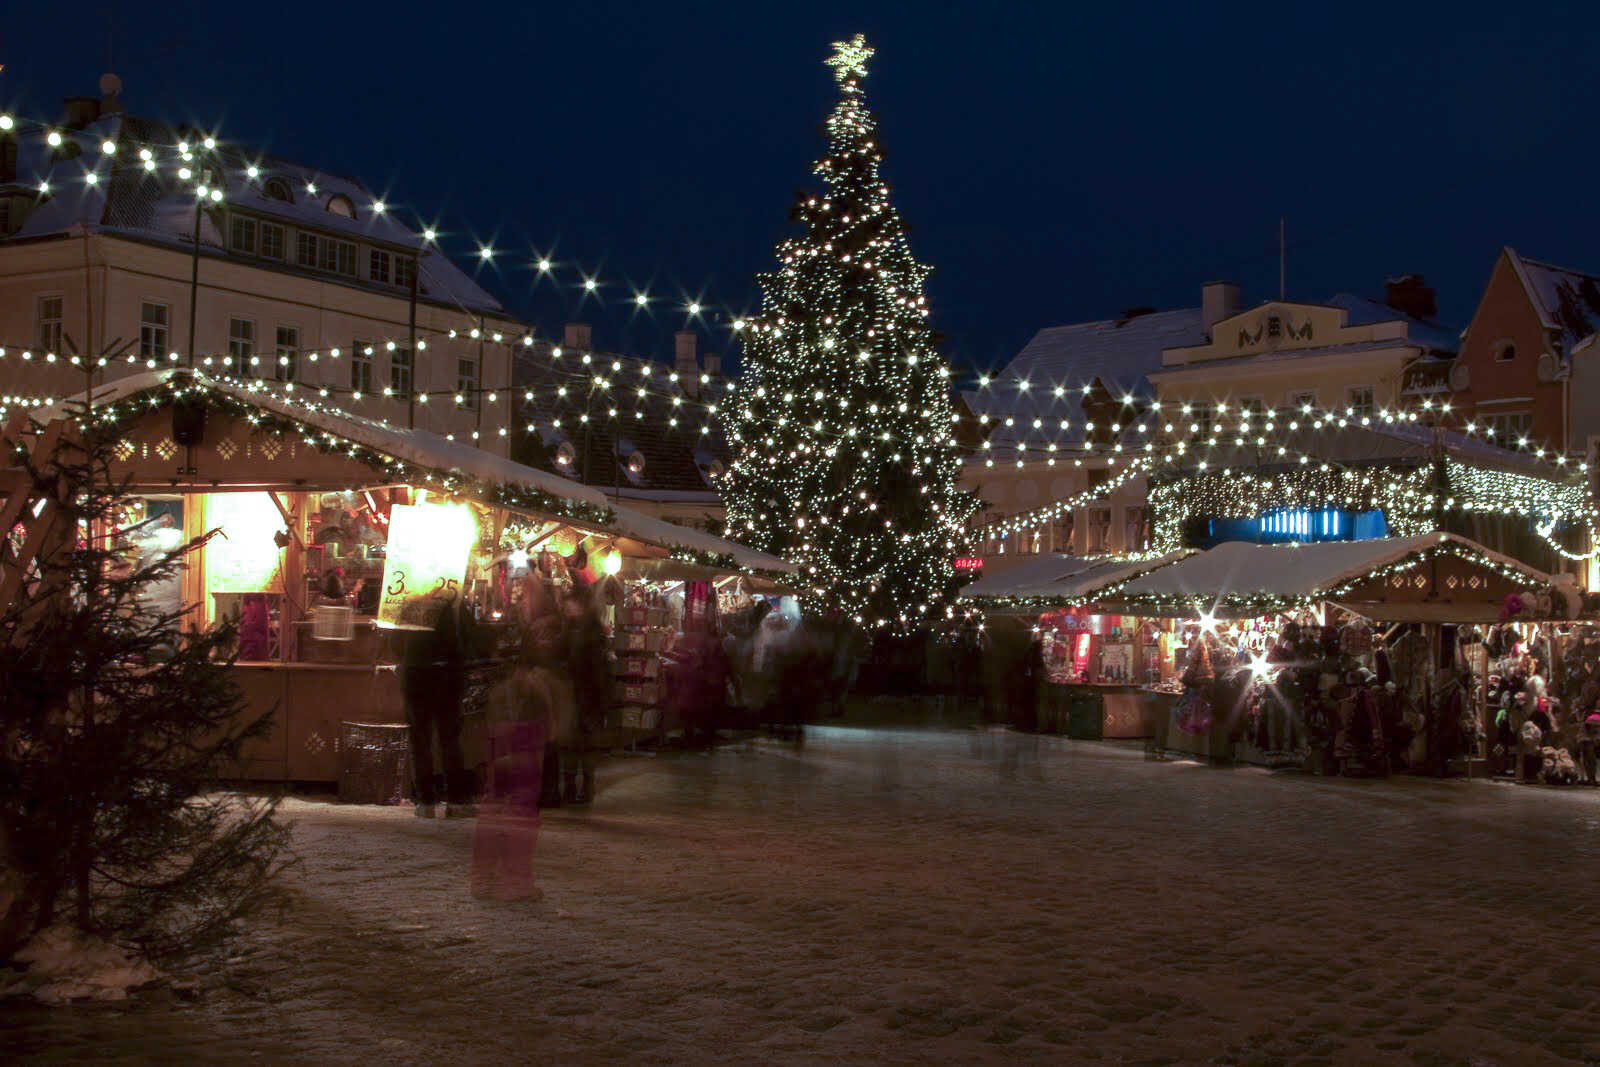 Christmas market in Tallinn Old Town